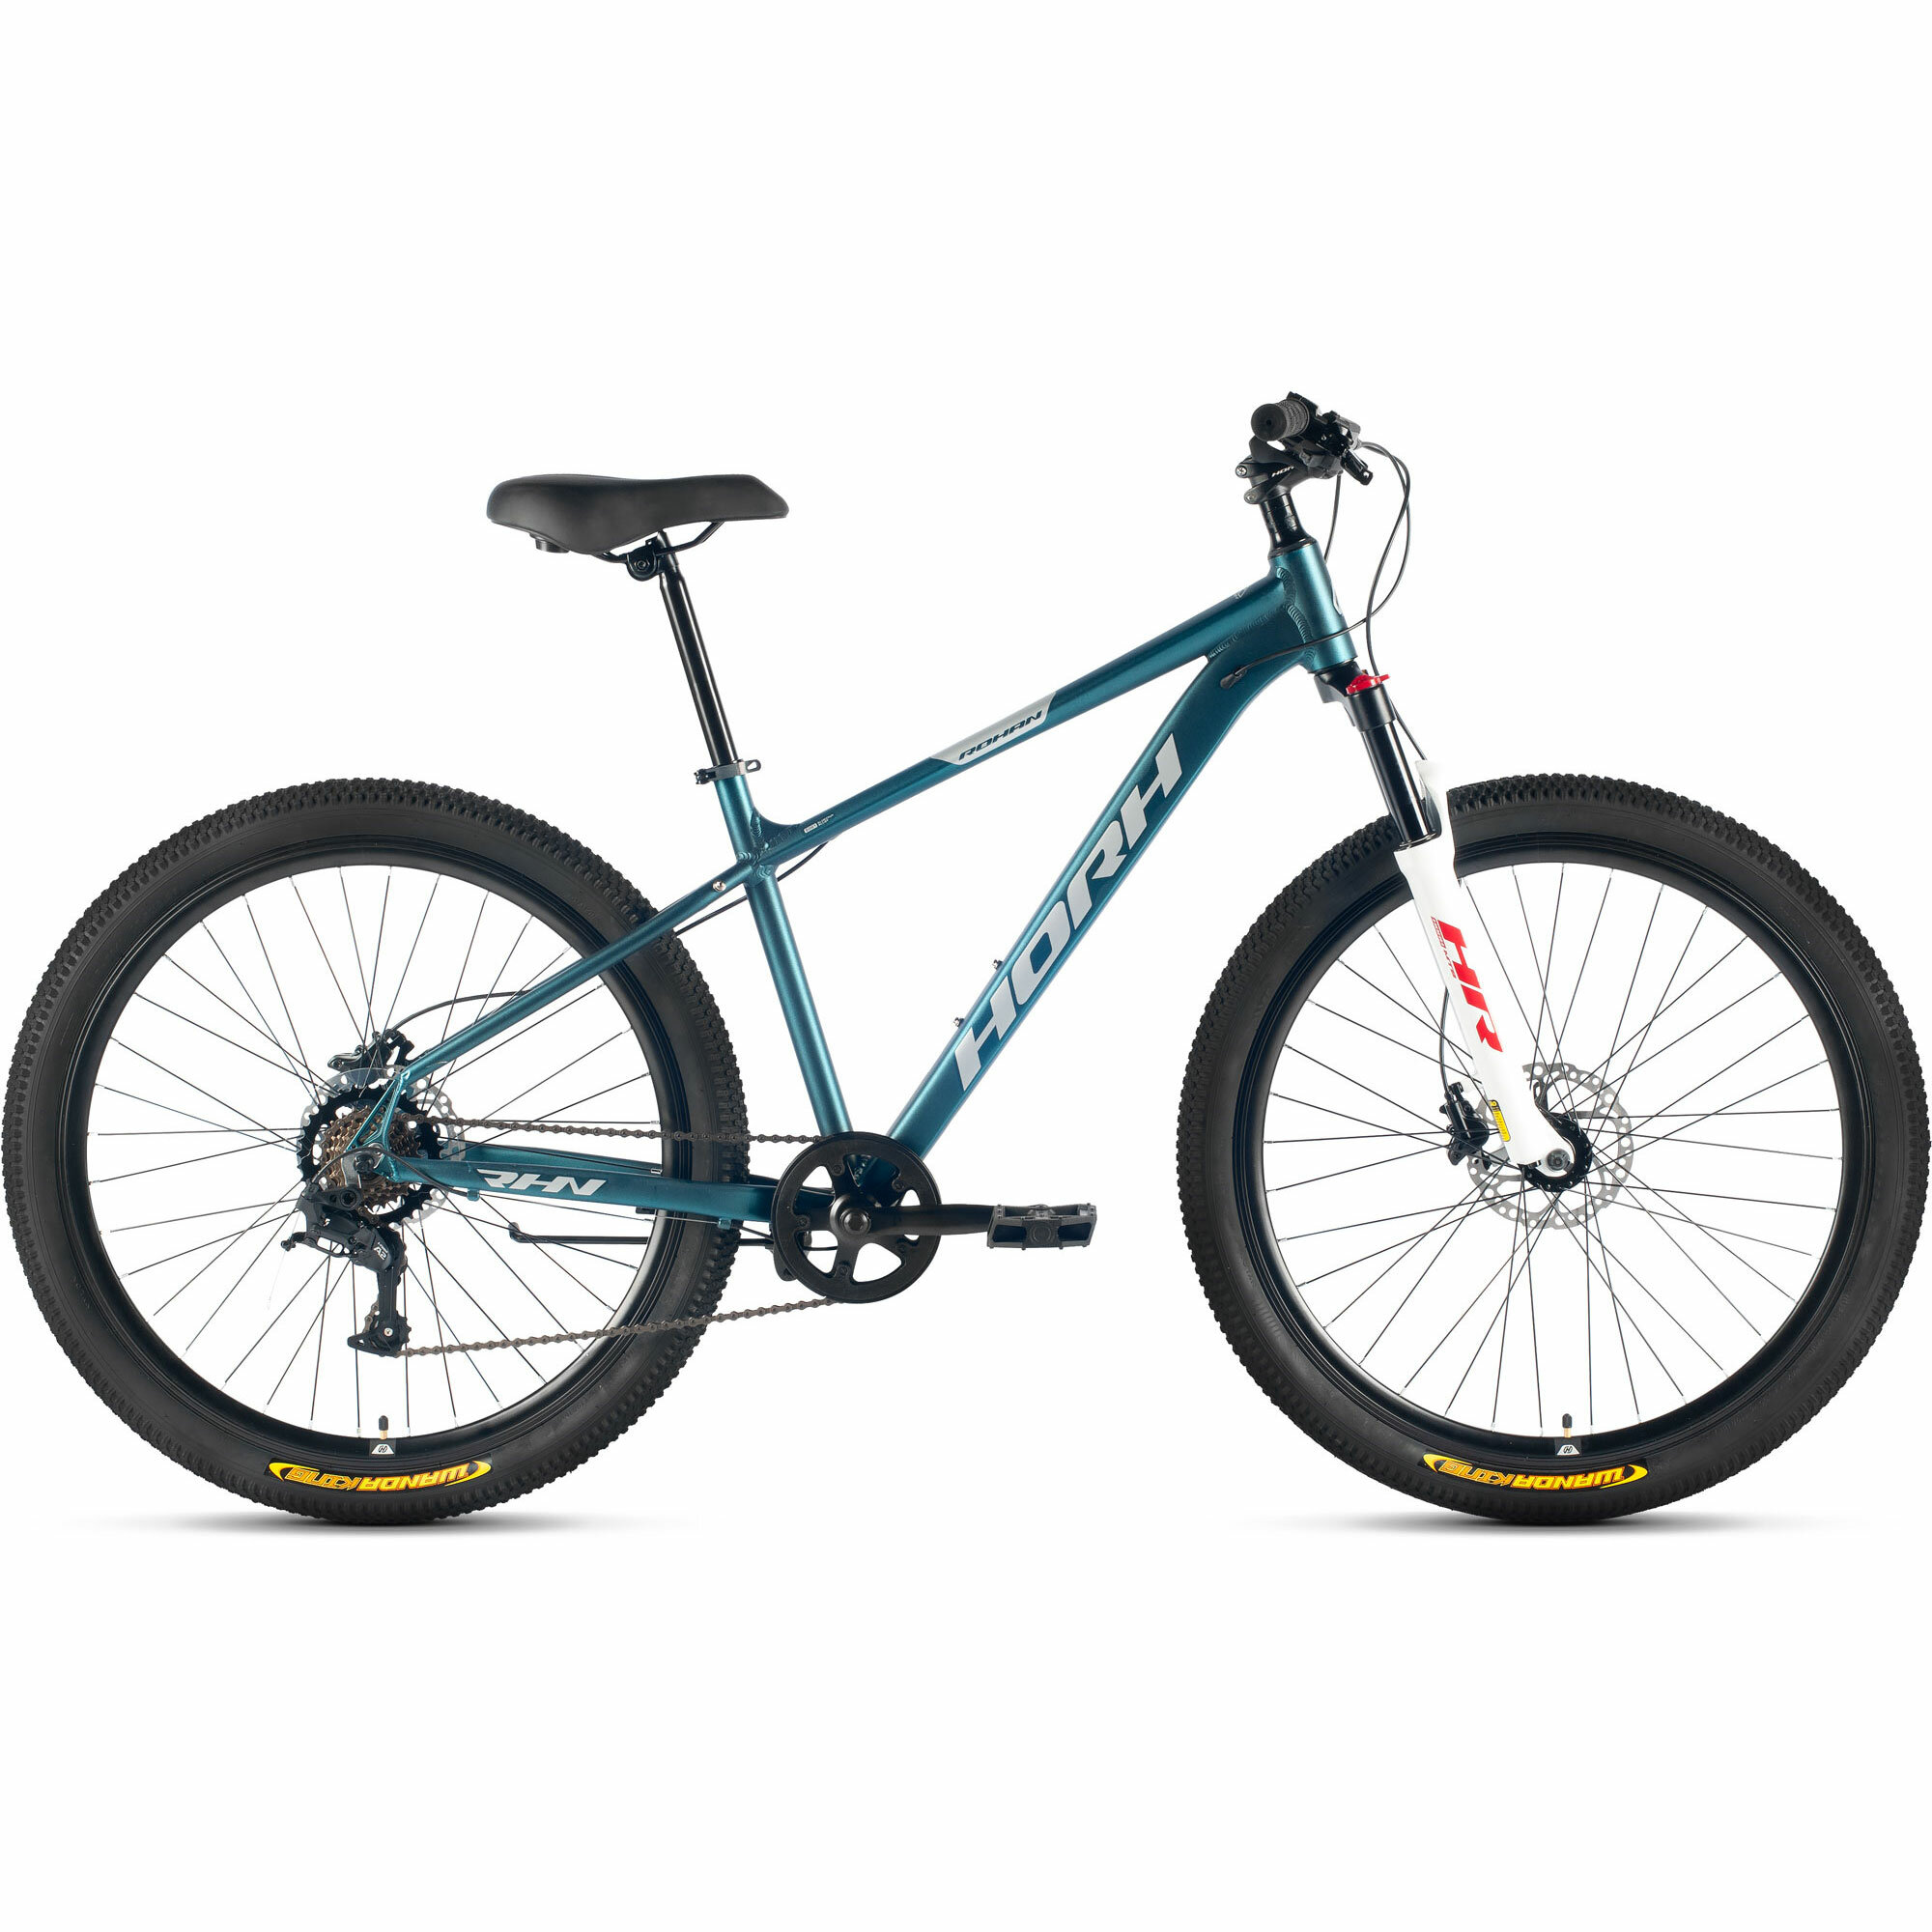 Велосипед горный HORH ROHAN RHD 7.0 27.5" (2024), хардтейл, взрослый, мужской, алюминиевая рама, 7 скоростей, дисковые гидравлические тормоза, цвет Dark Turquoise-Grey-Red, темно-бирюзовый/серый/красный, размер рамы 17", для роста 170-180 см